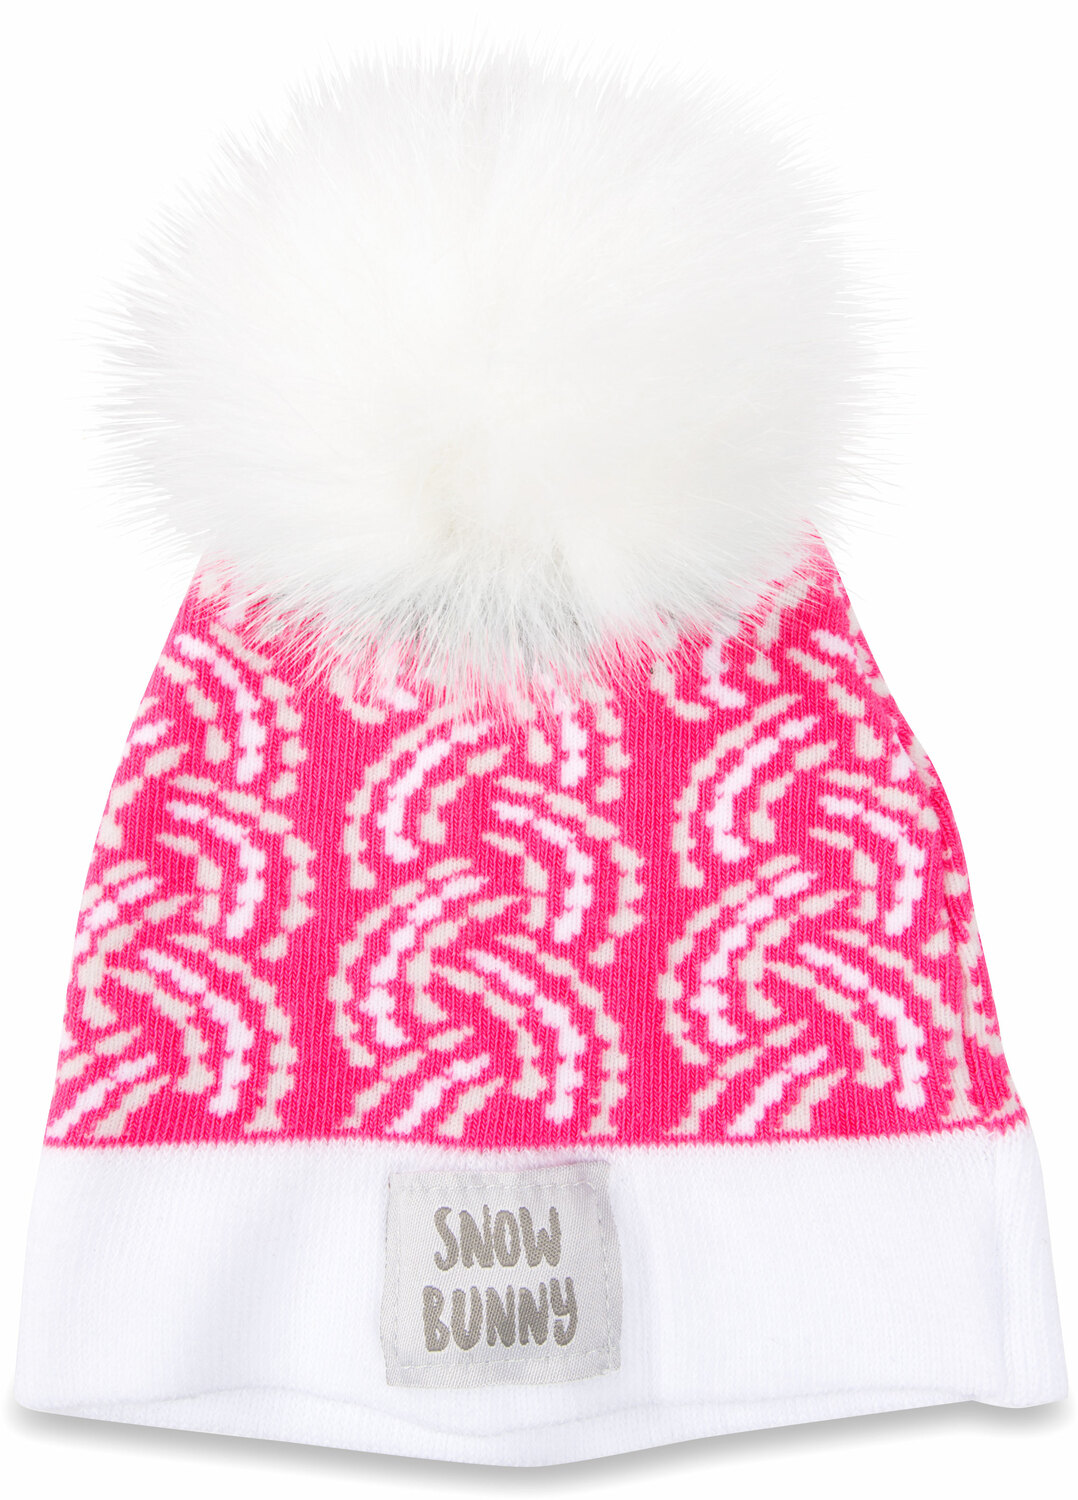 Snow Bunny by Sidewalk Talk - Snow Bunny - Pink Knit Pom Pom Hat
(0-12 Months)